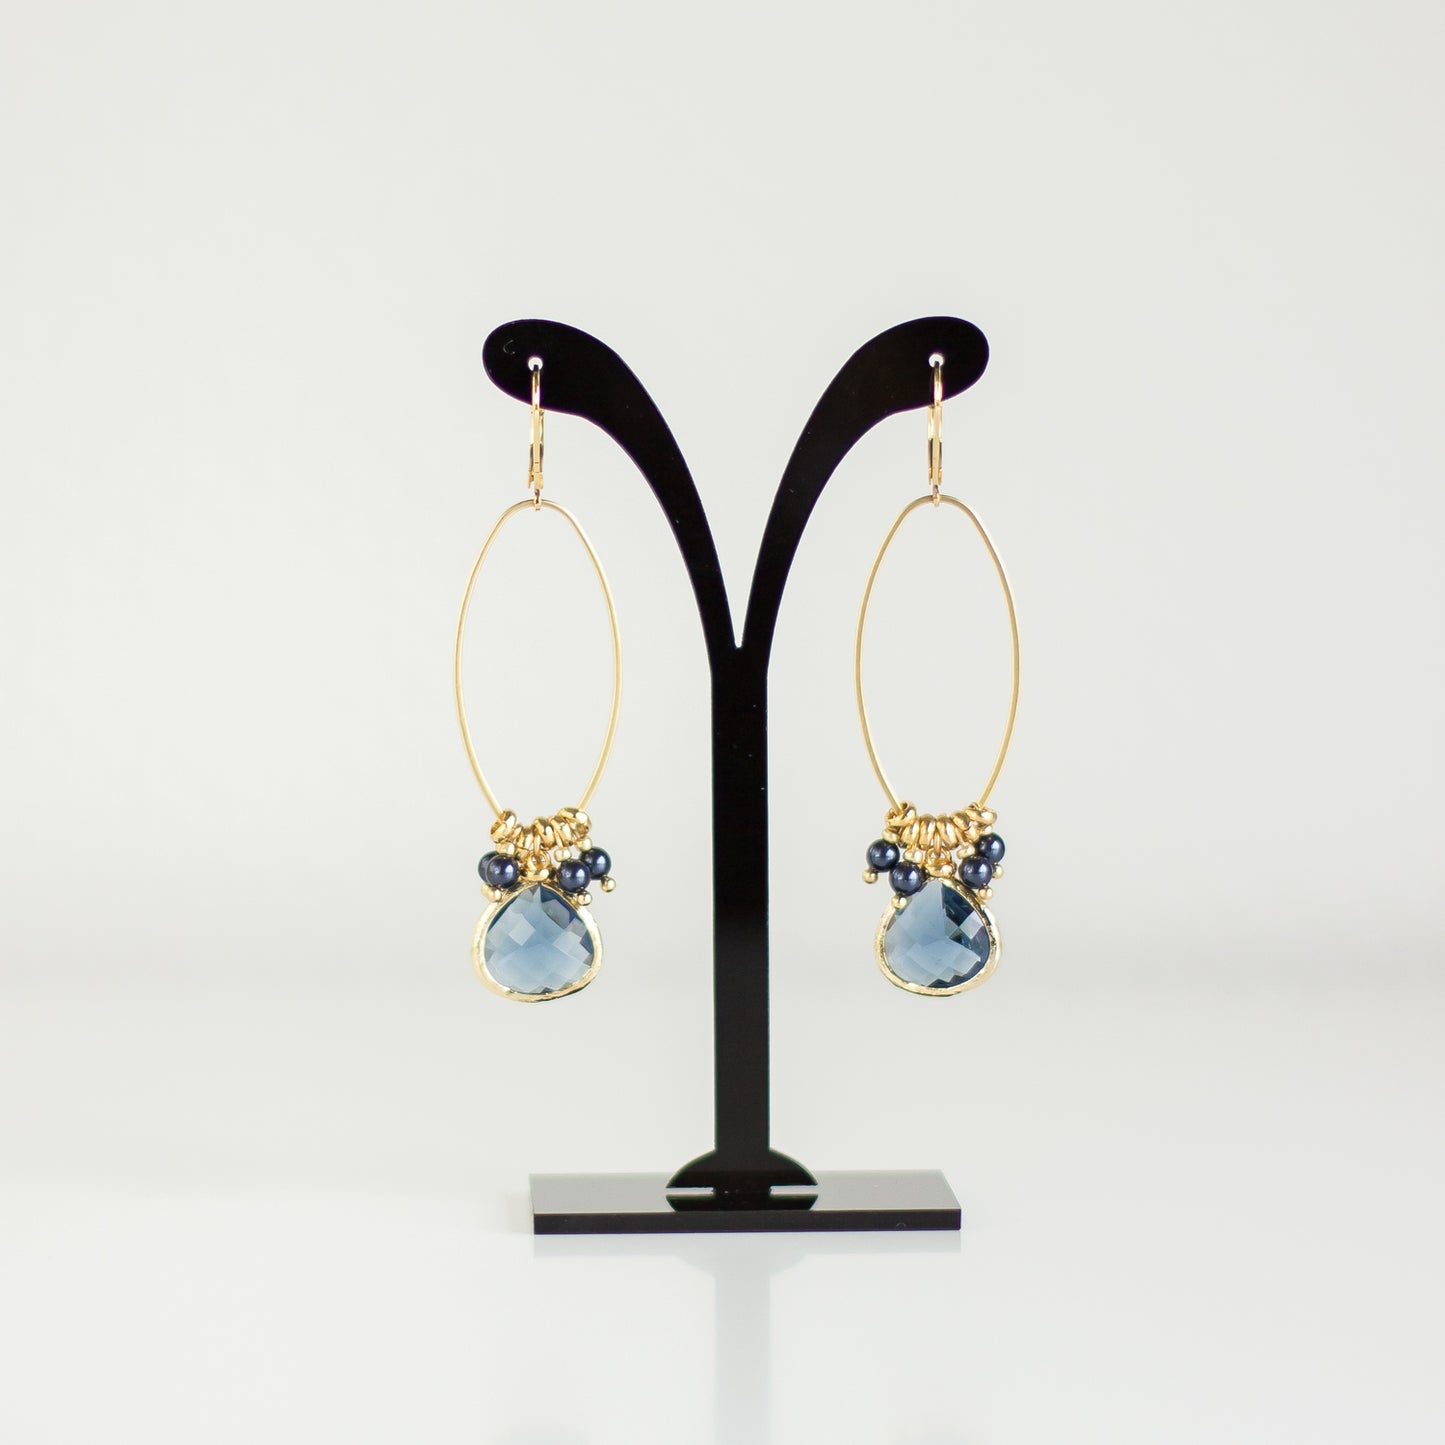 Buy online handmade Blue Gold earrings. Dangle Drop Earrings. Gold earrings. Blue earrings. Long earrings. Crystal earrings. Denim earrings. Handmade jewelry